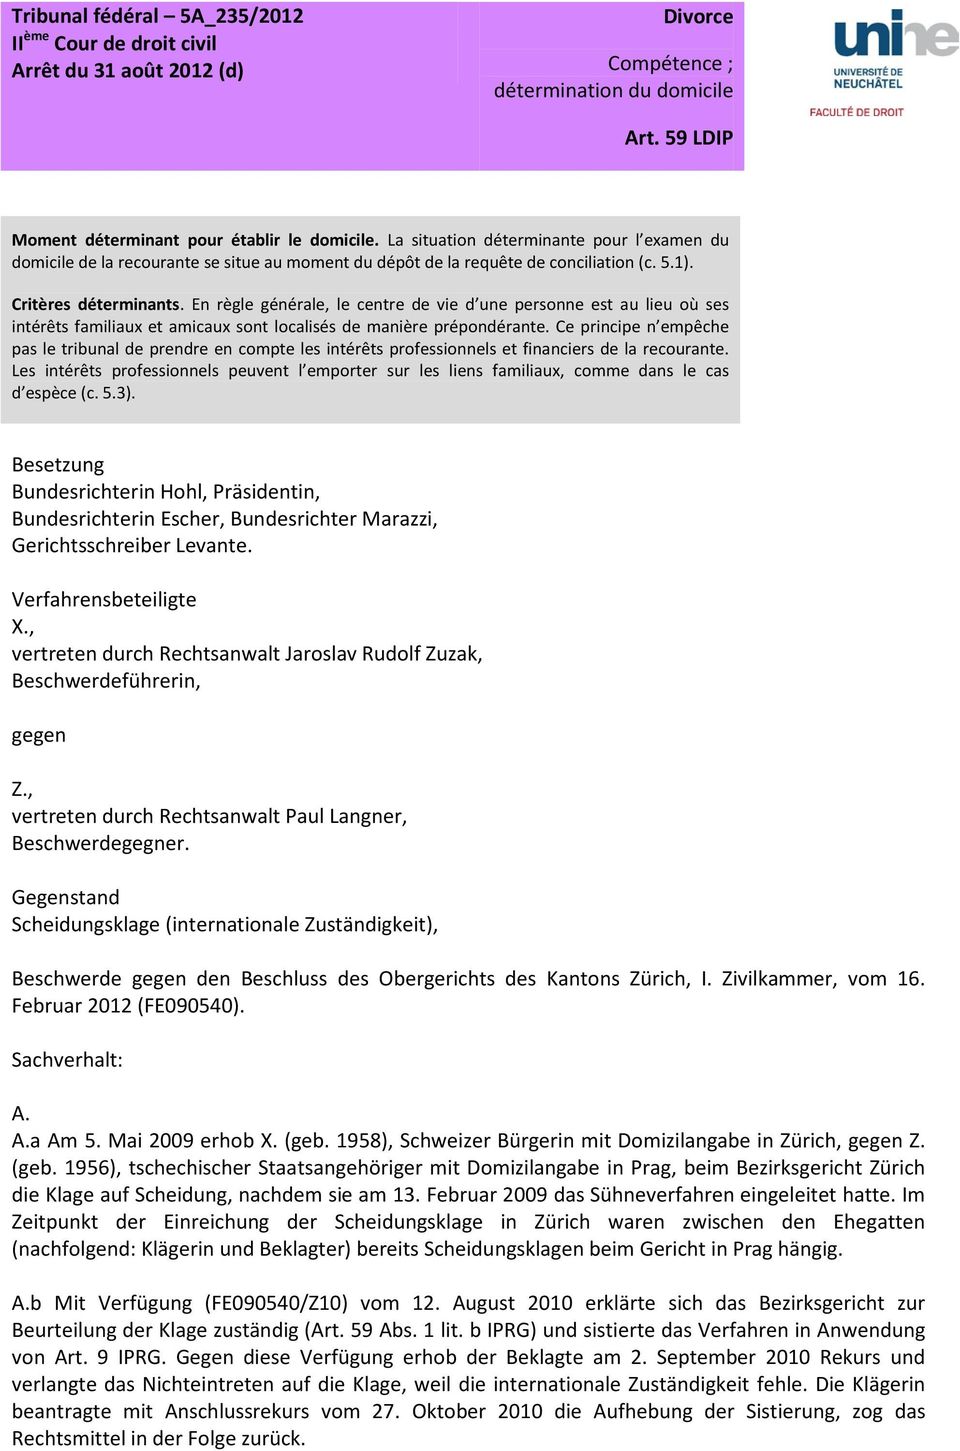 Beschwerde Gegen Den Beschluss Des Obergerichts Des Kantons Zurich I Zivilkammer Vom 16 Februar 2012 Fe090540 Pdf Free Download